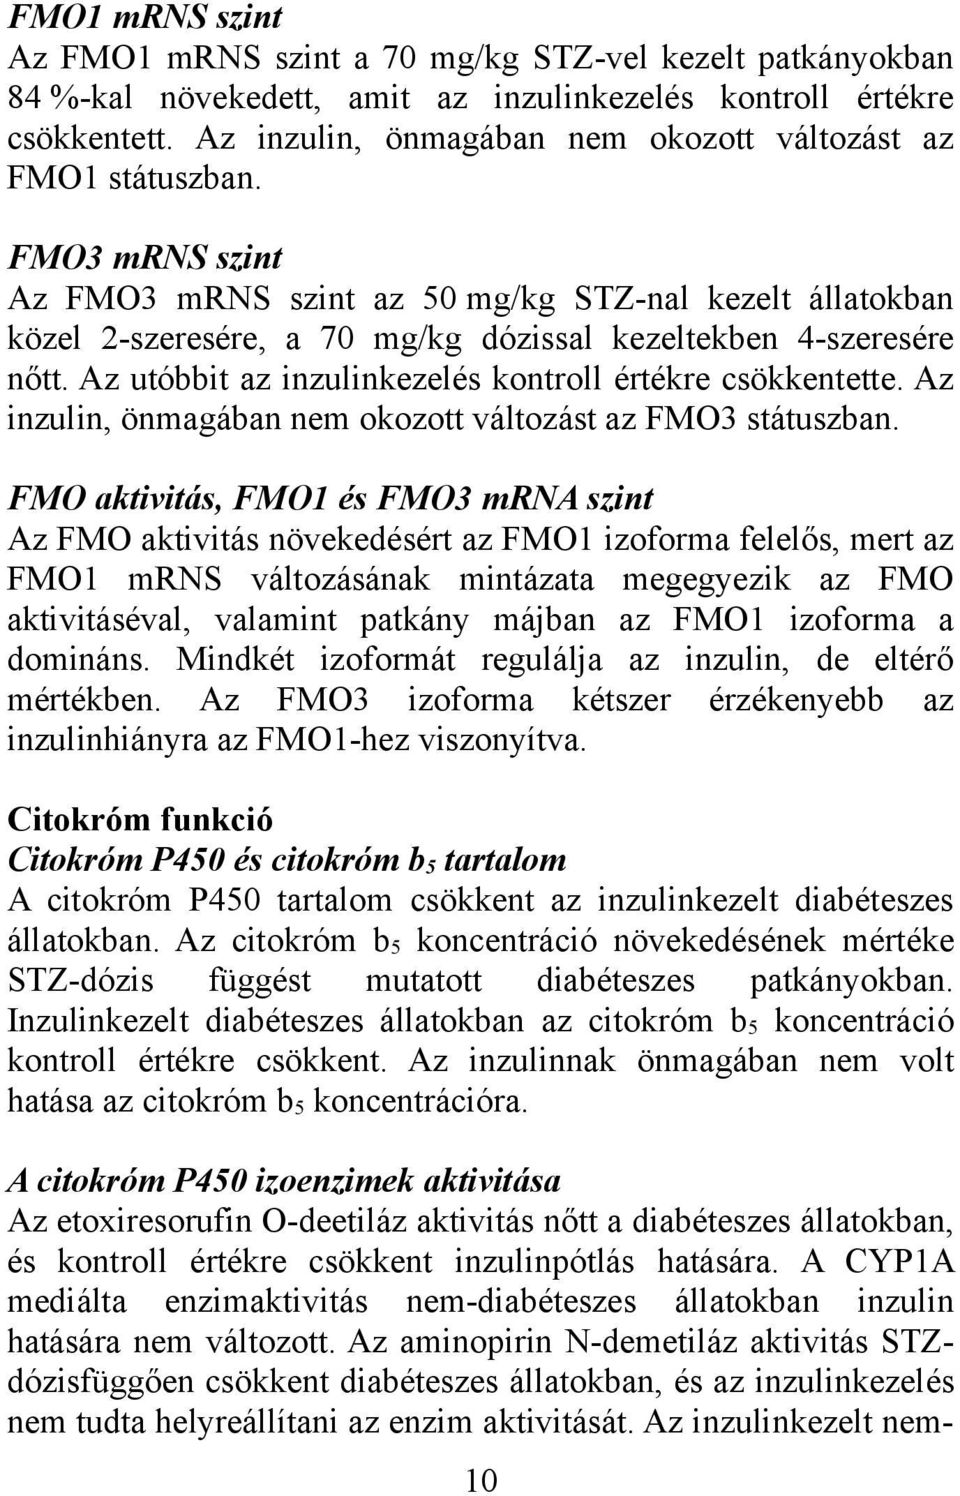 FMO3 mrns szint Az FMO3 mrns szint az 50 mg/kg STZ-nal kezelt állatokban közel 2-szeresére, a 70 mg/kg dózissal kezeltekben 4-szeresére nőtt.